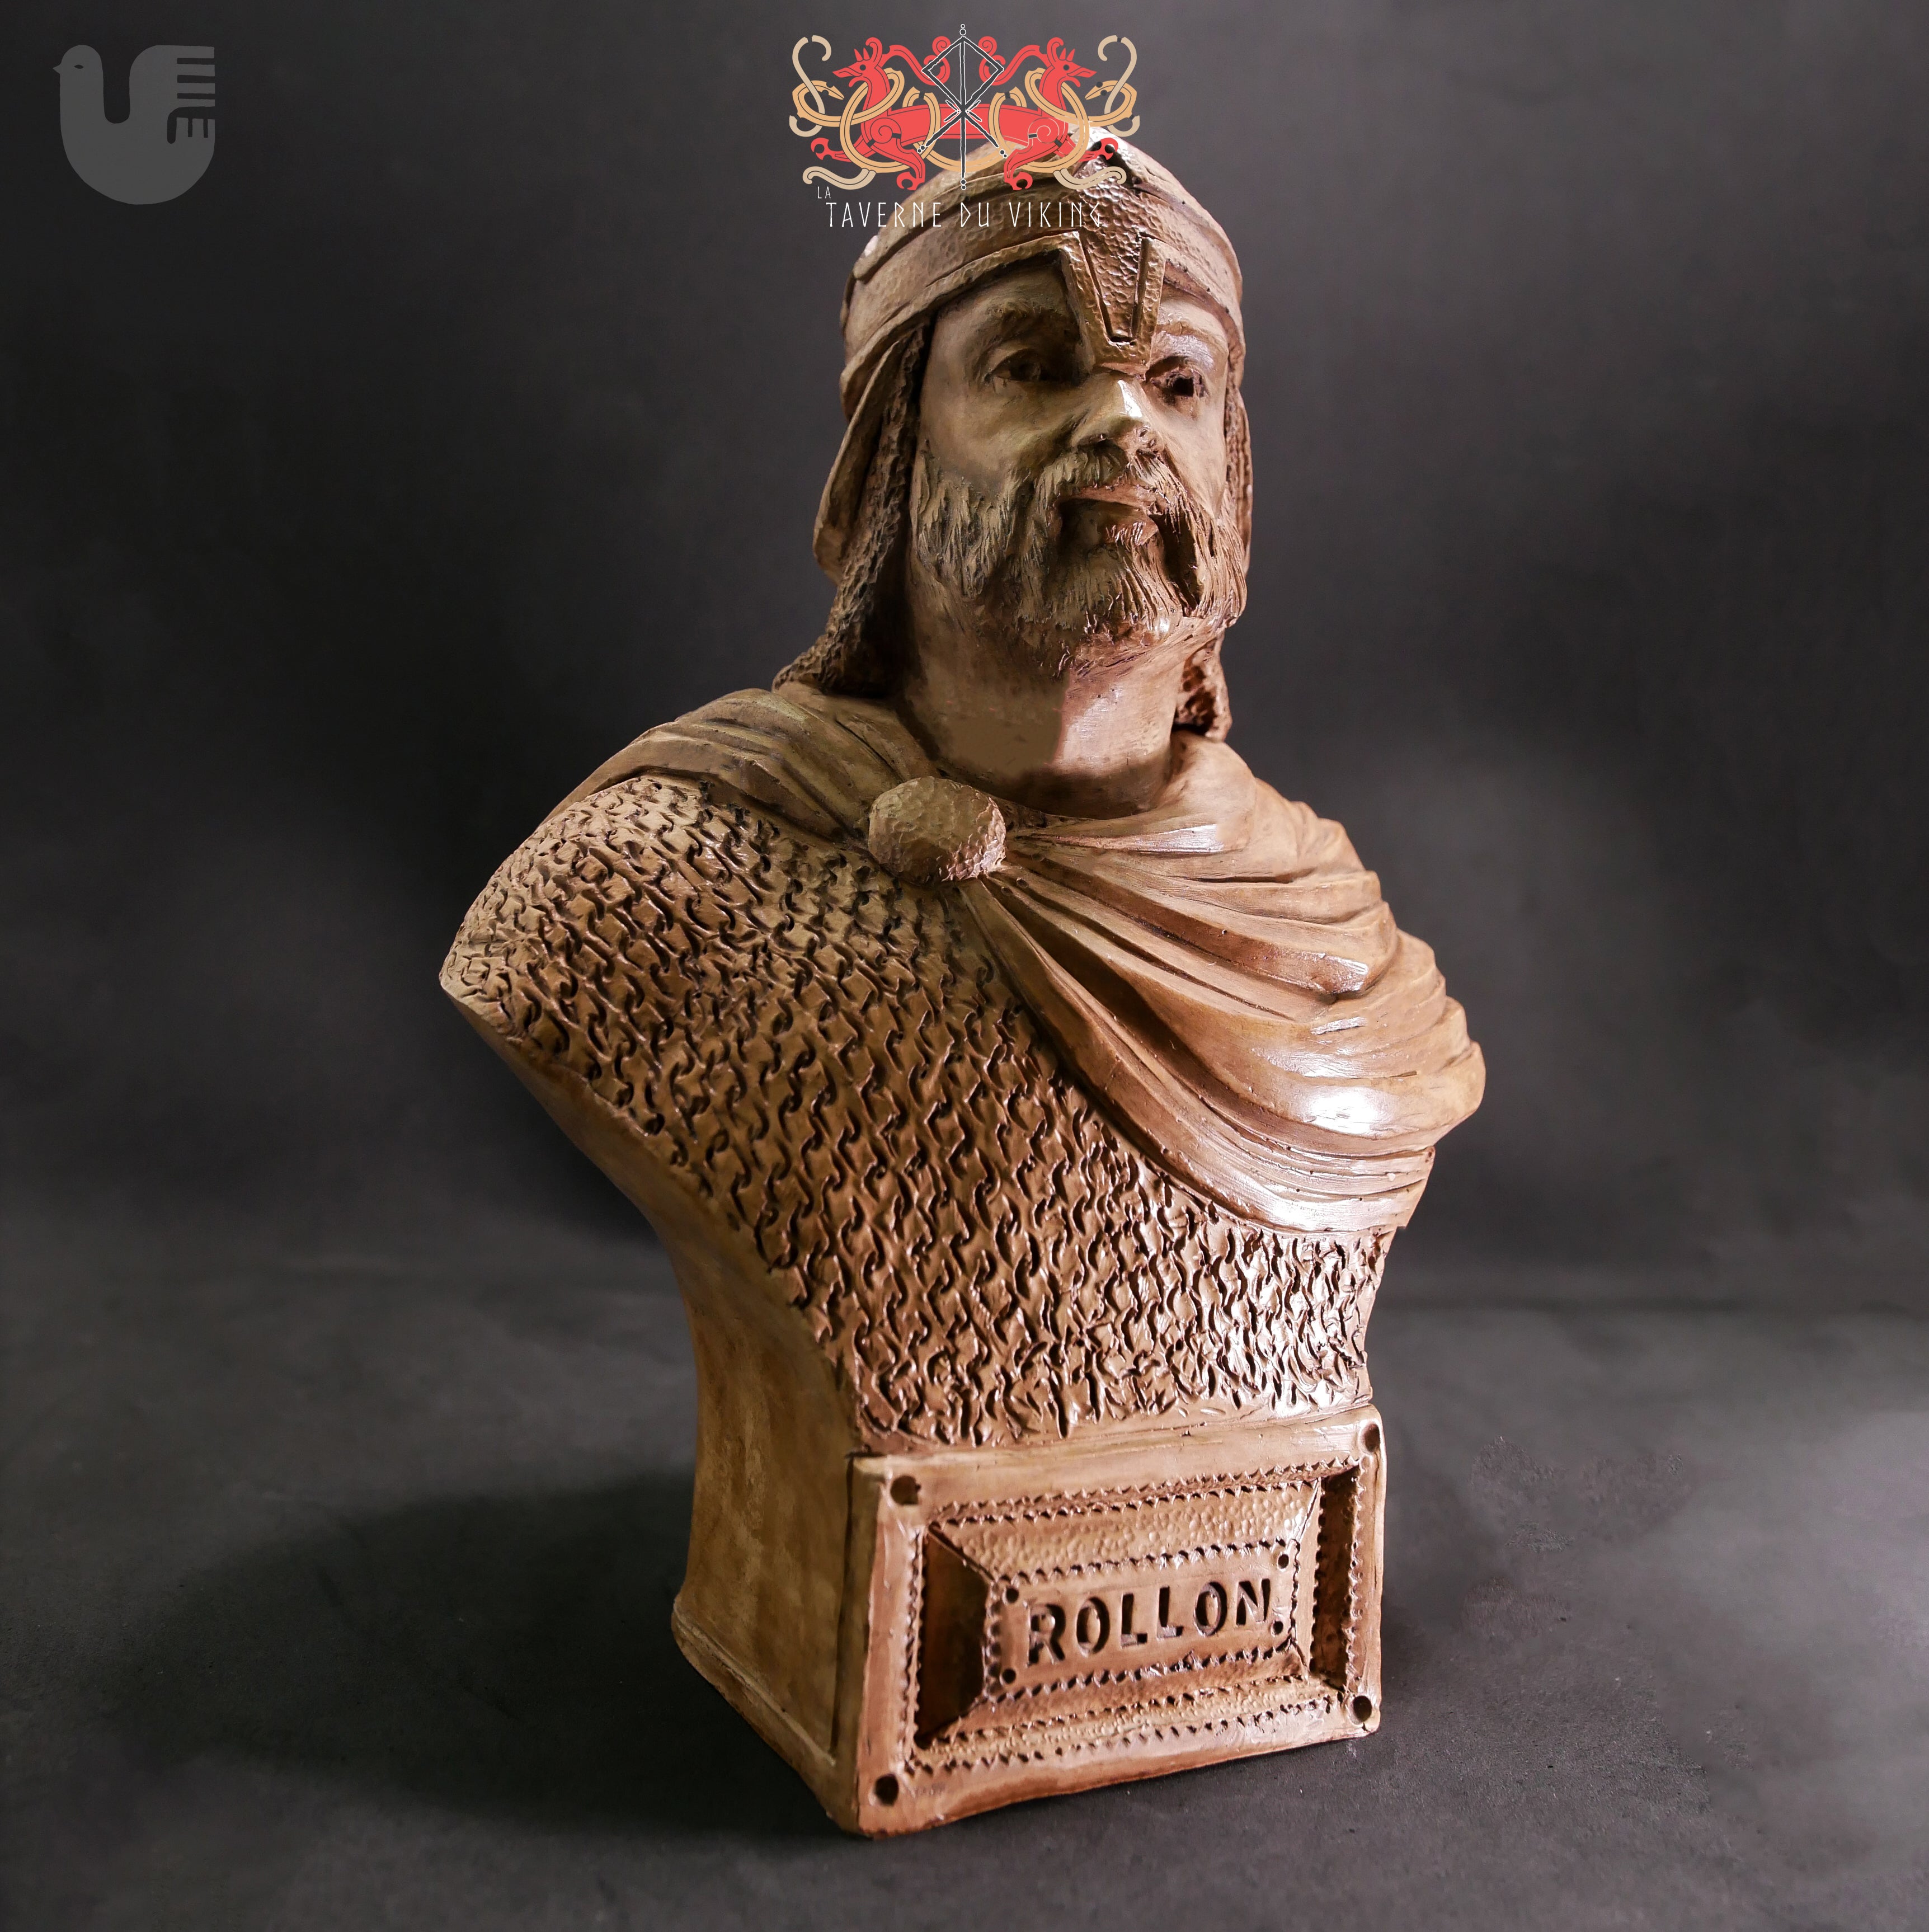 Buste Rollon - La Taverne du Viking